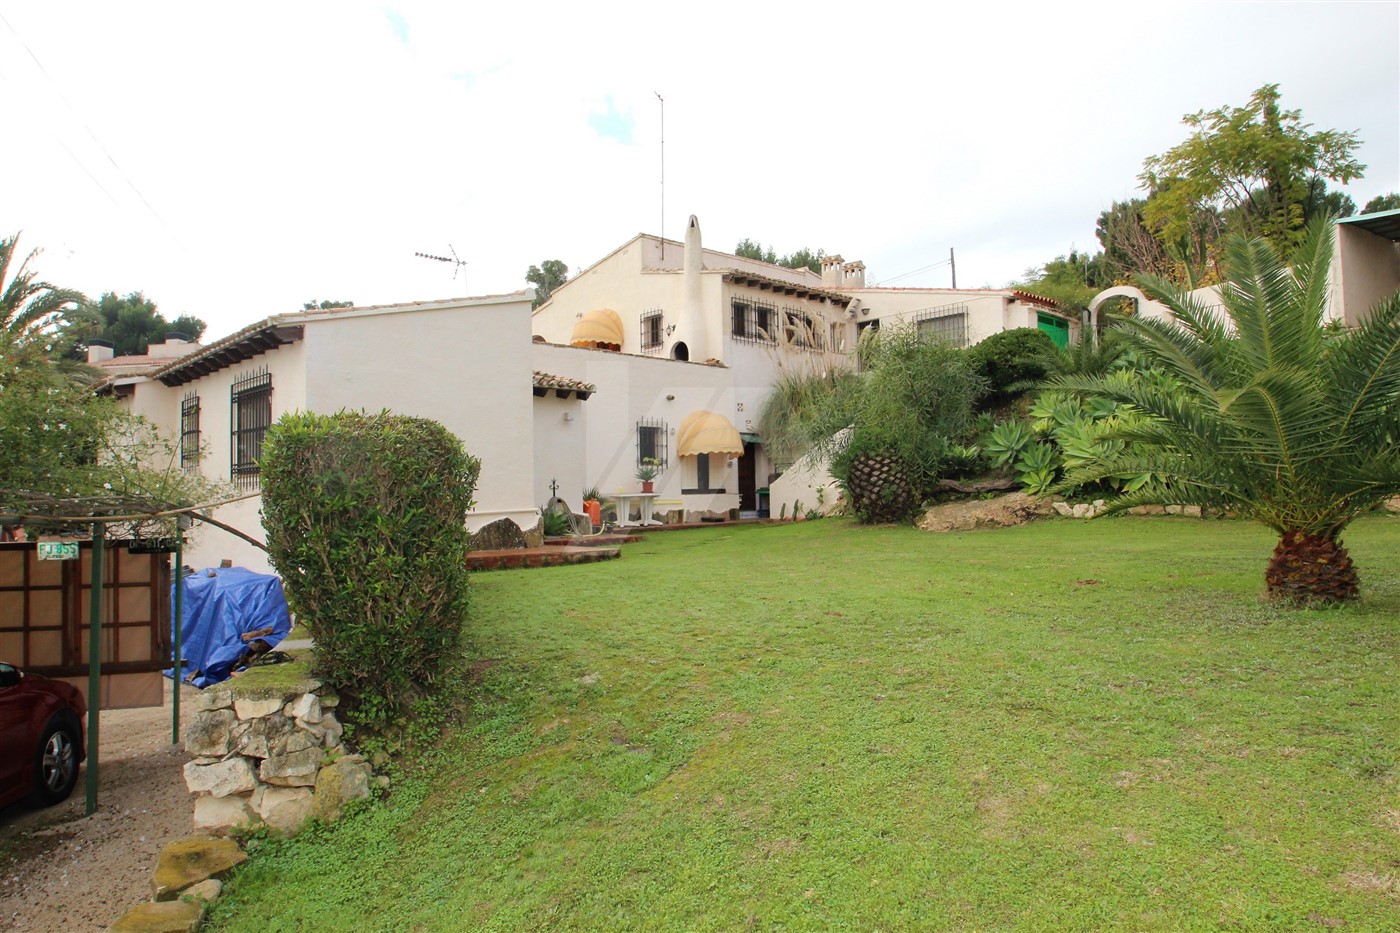 Villa zum Verkauf in Moraira auf einem Doppelgrundstück, nahe an der Stadt.